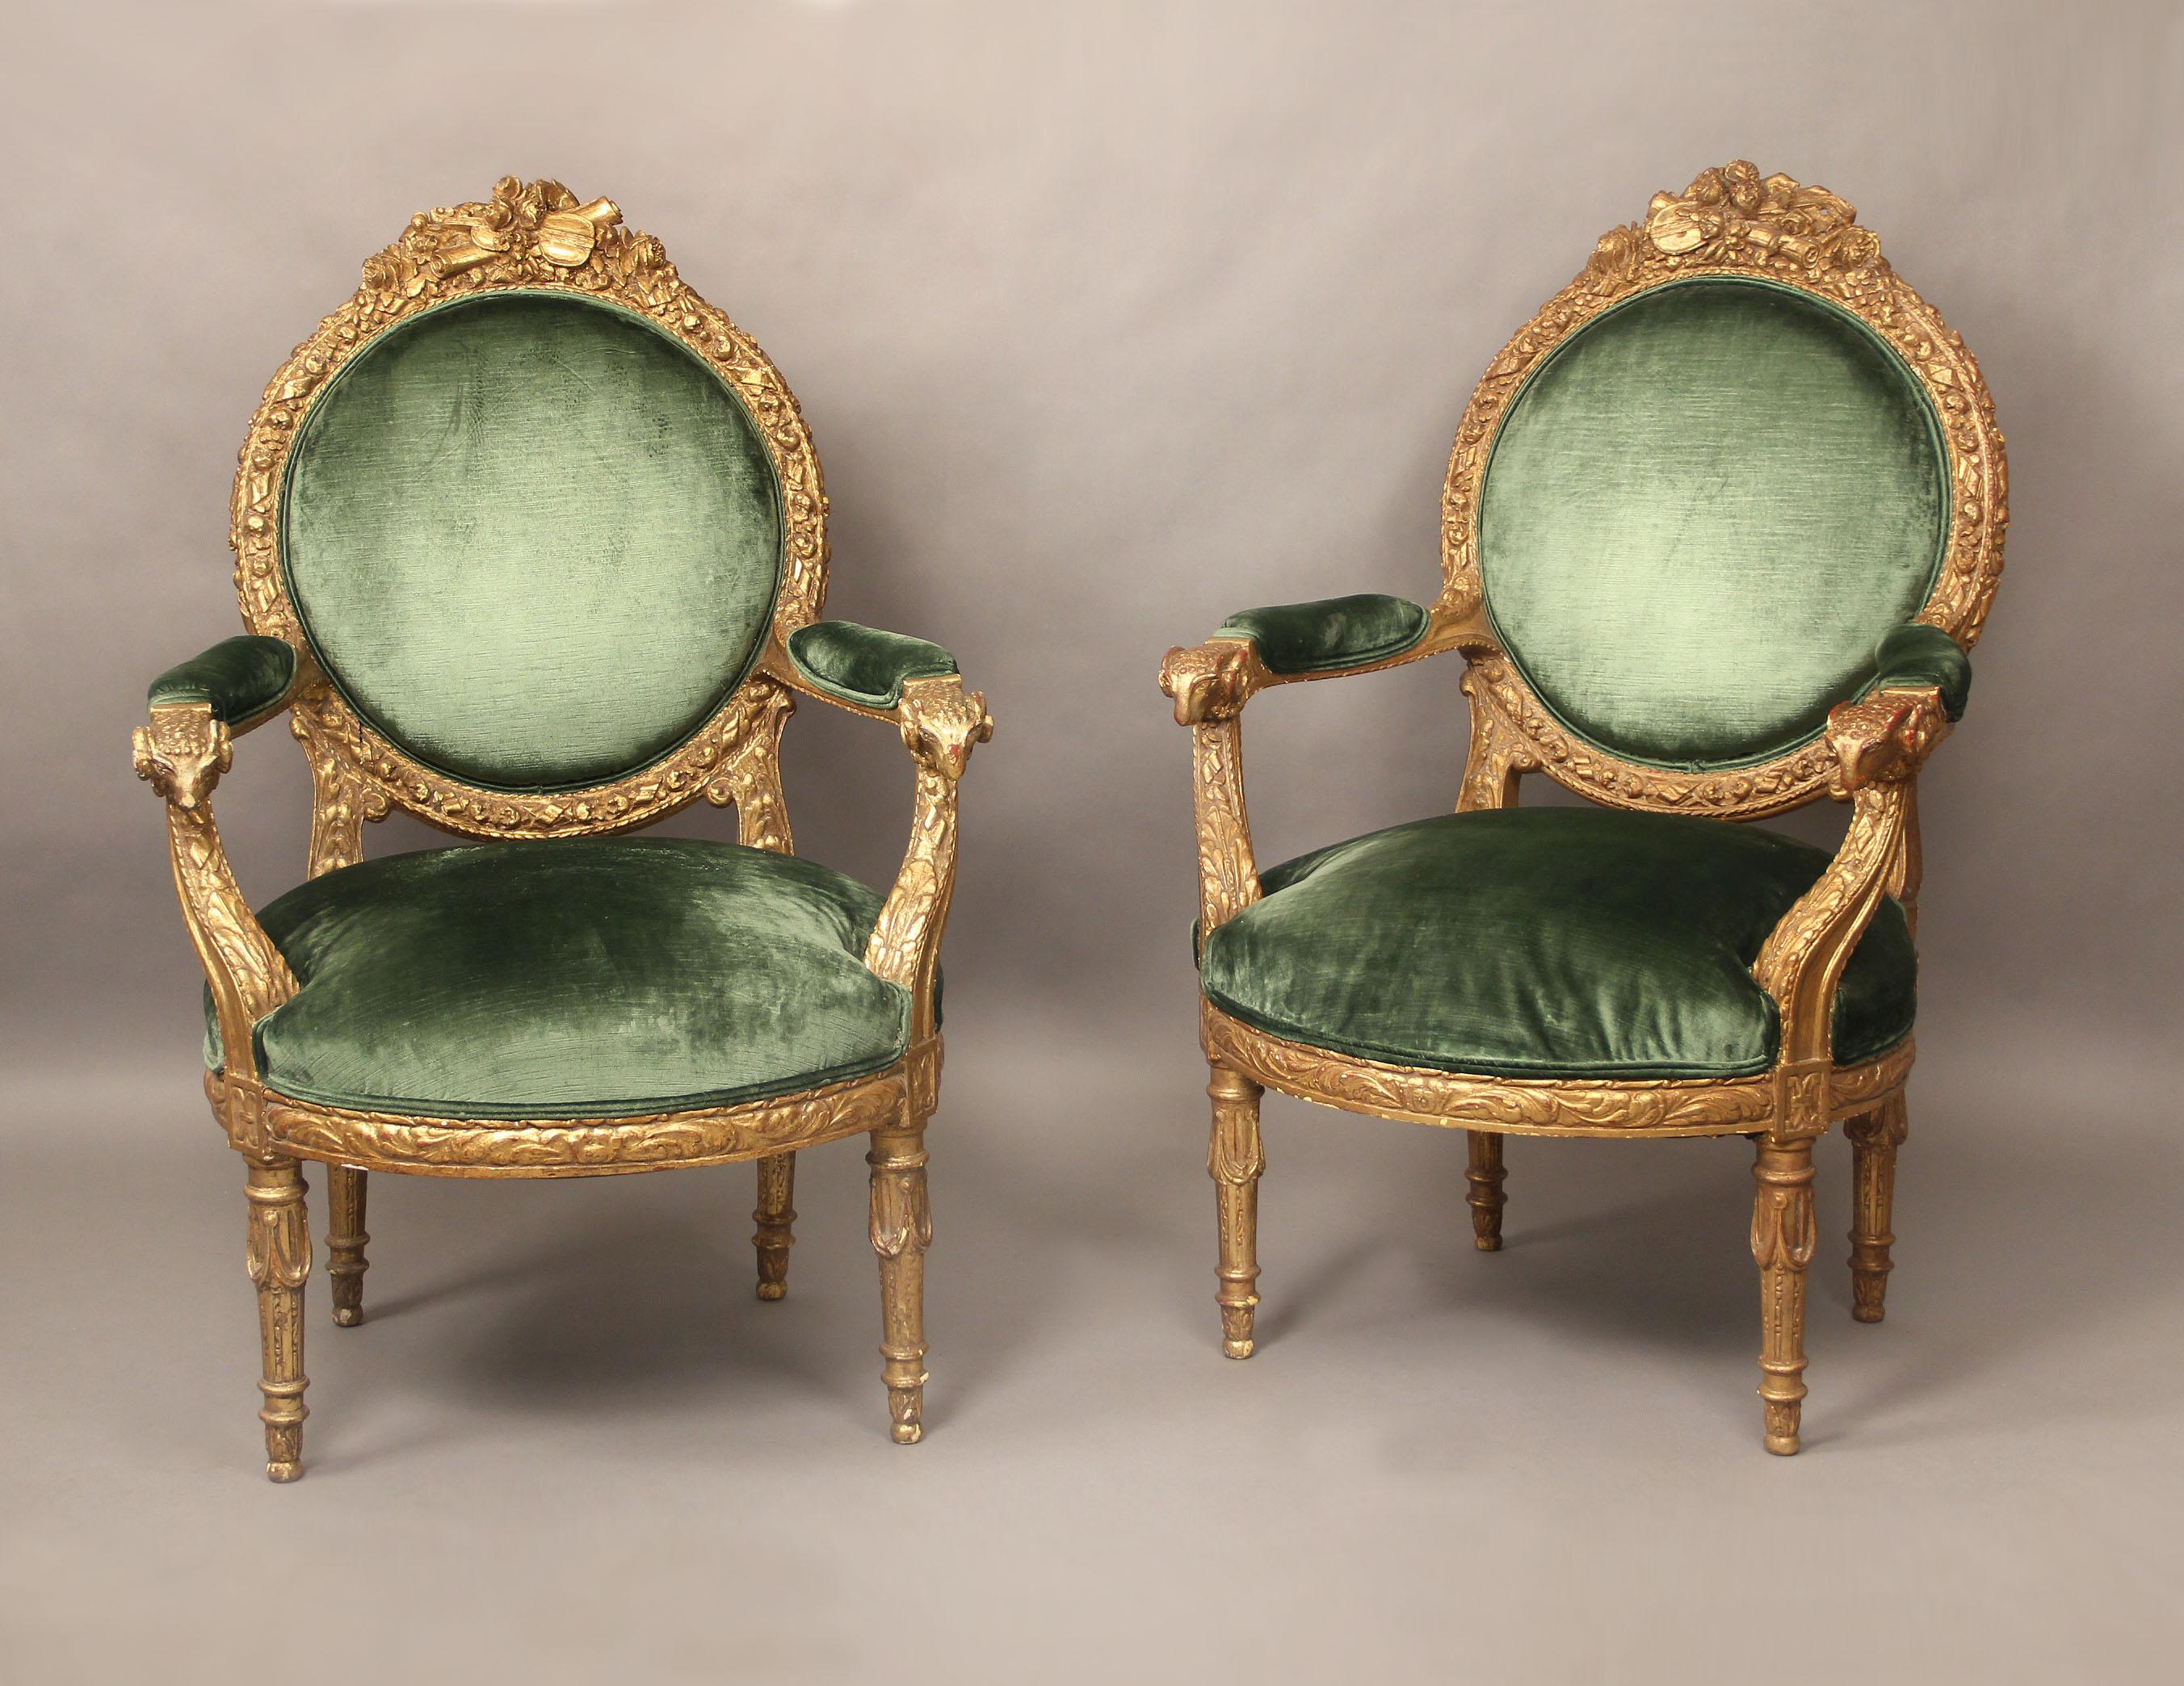 Ein sehr schönes Paar vergoldeter Sessel im Louis-XVI-Stil des späten 19. Jahrhunderts.

Übergroß mit hohen Rückenlehnen, floral geschnitzten Rahmen mit Instrumenten auf der Oberseite und Widderkopf auf den Armlehnen.